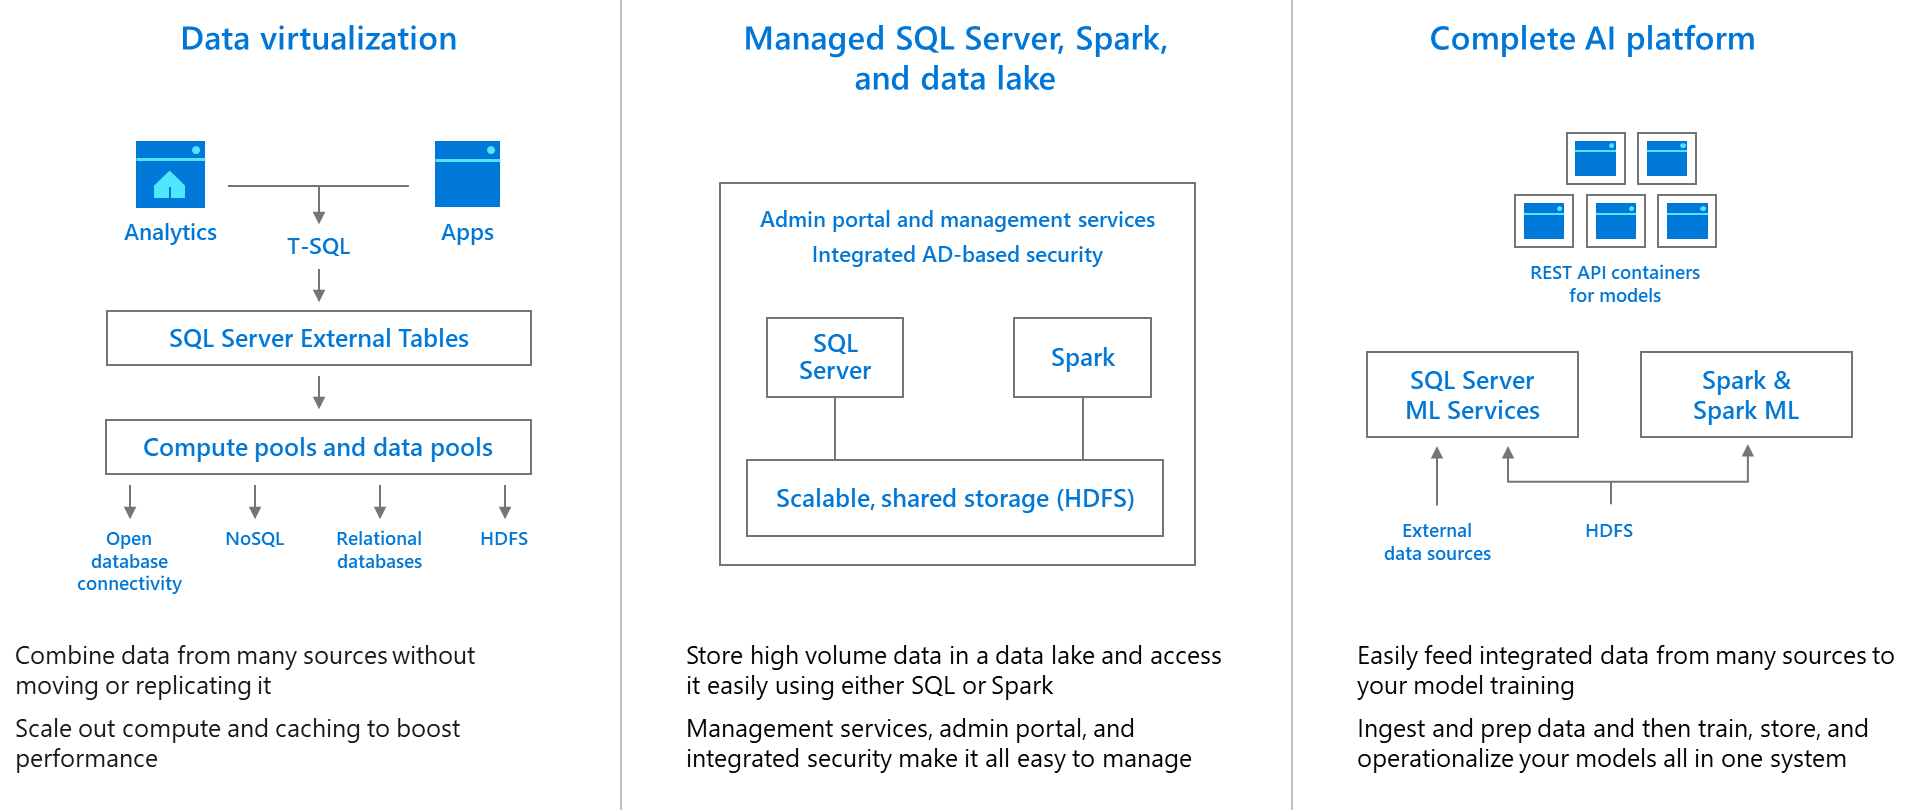 About SQL server 2019 setup Data-virtualization-managed-sql-server-spark-and-data-lake-complete-ai-platform.png